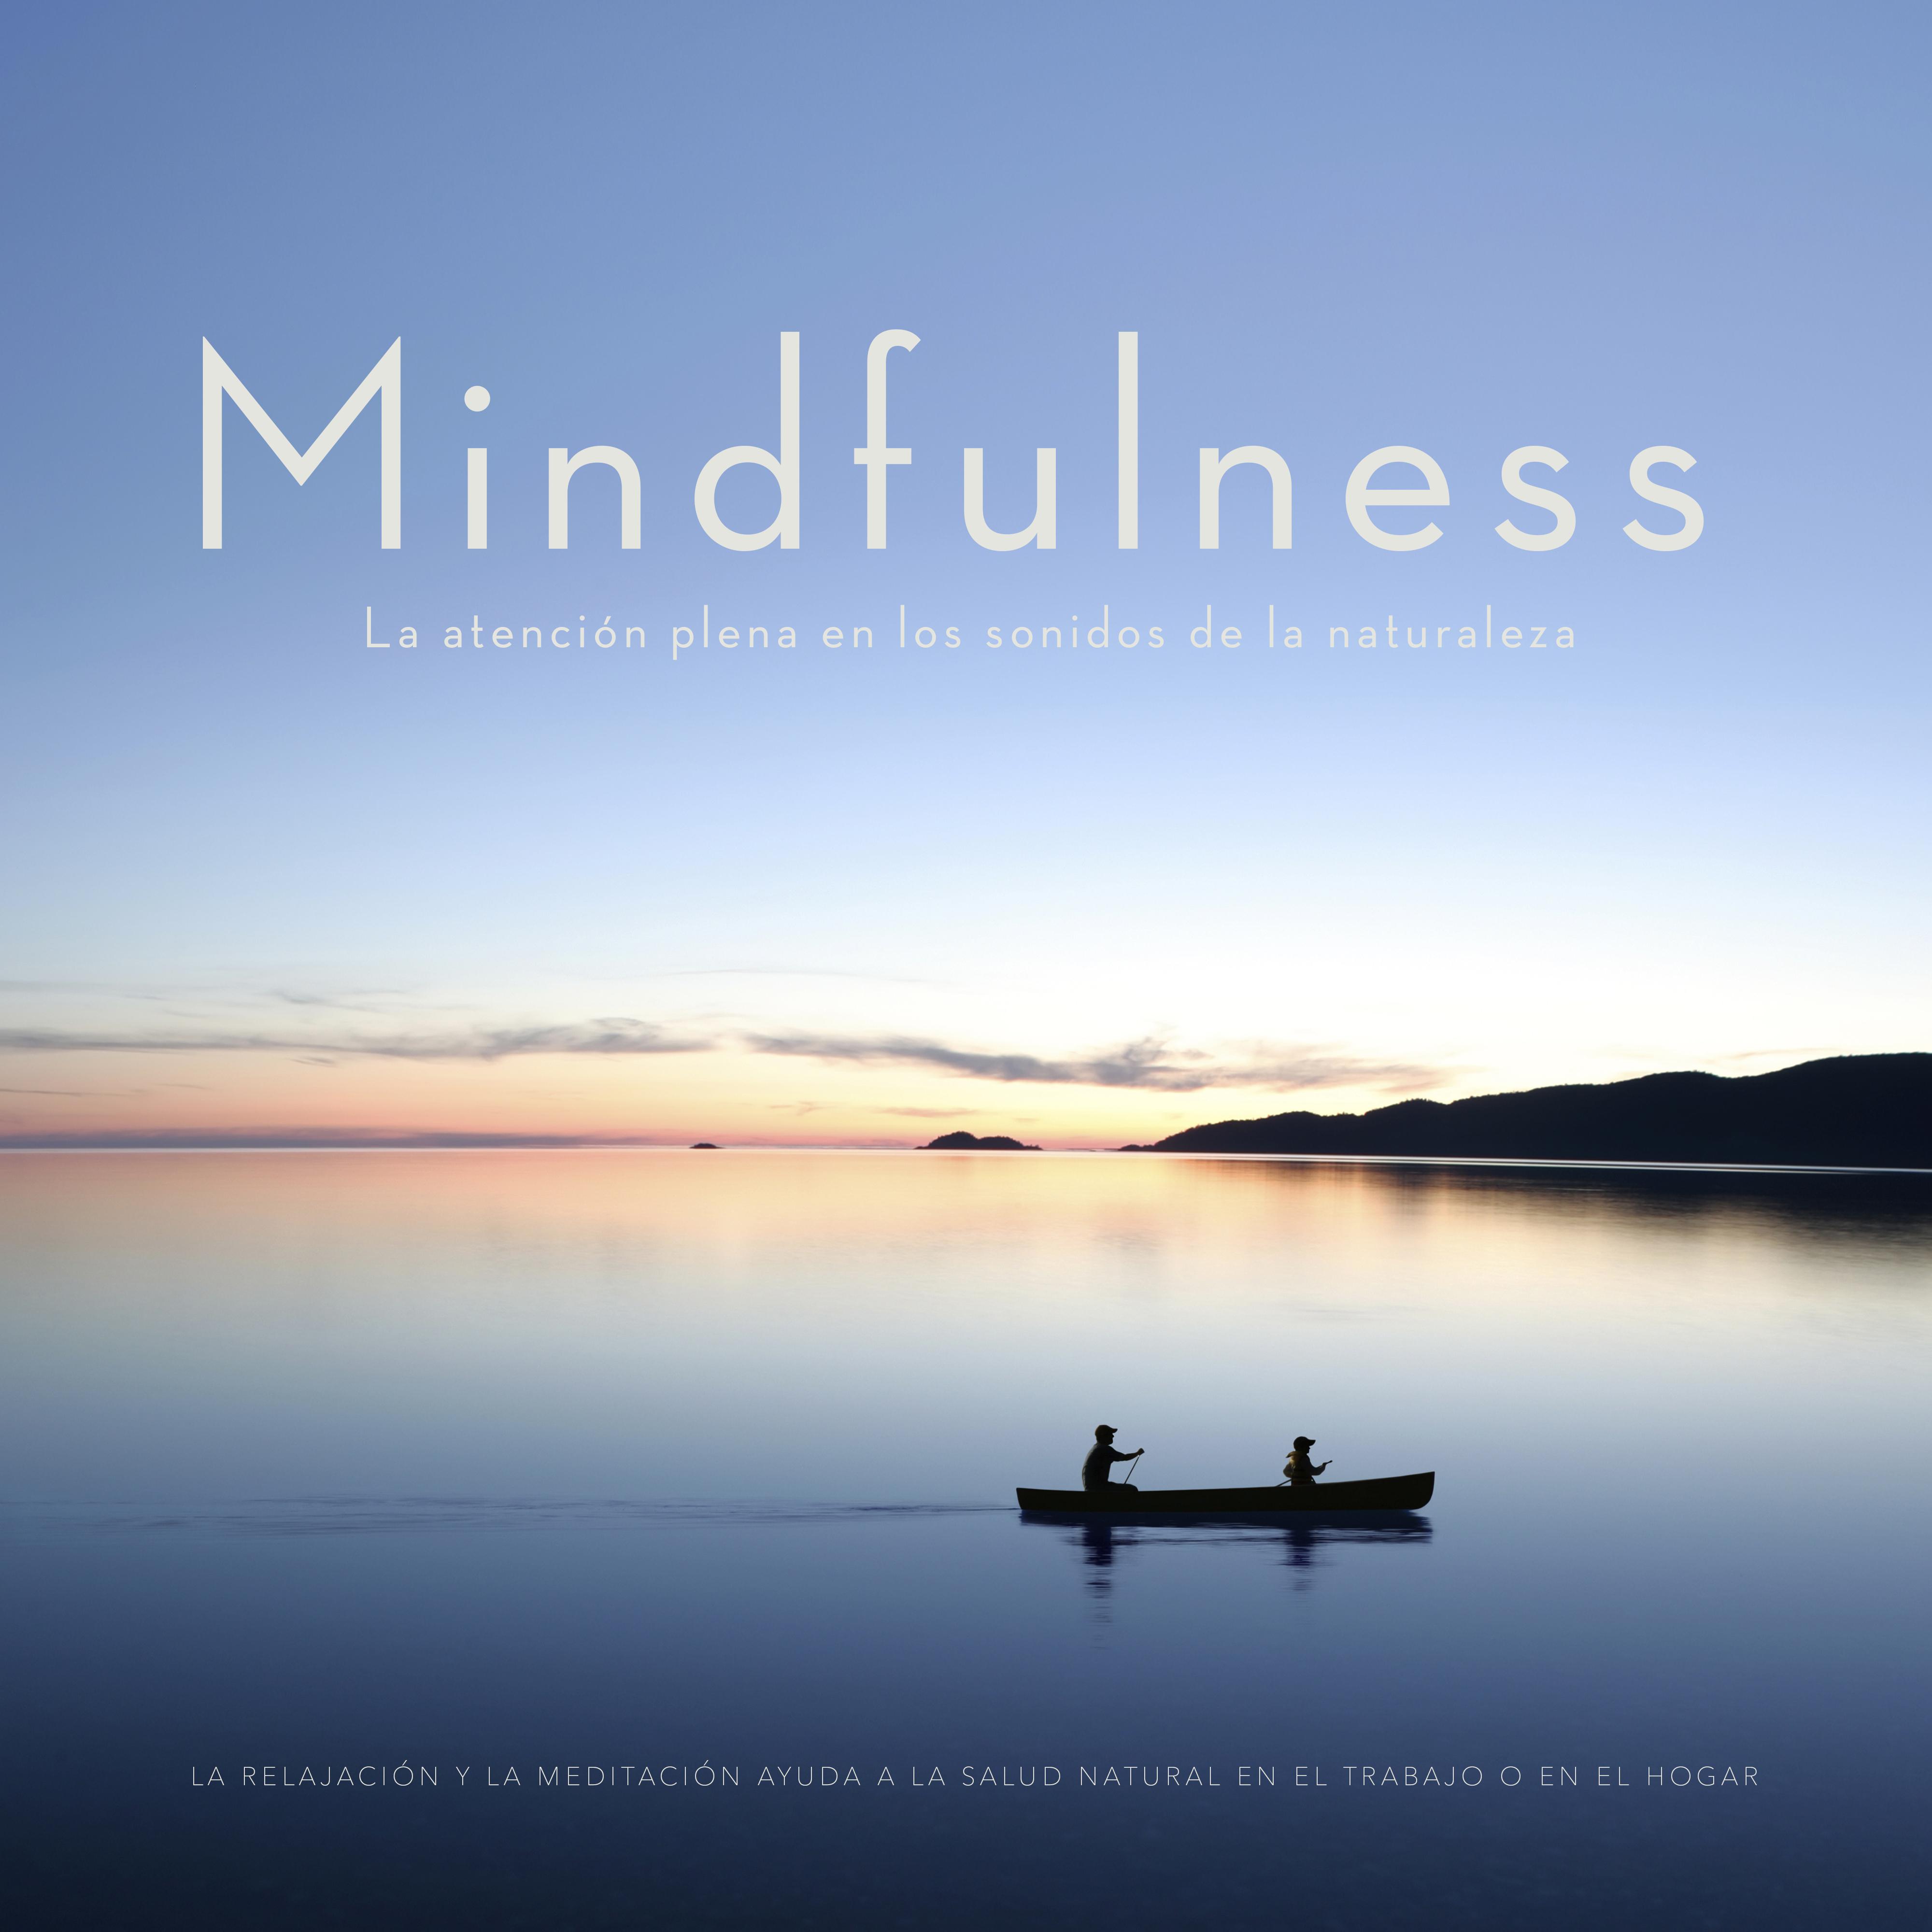 Mindfulness   La atencio n plena en los sonidos de la naturaleza : la relajacio n y la meditacio n ayuda a la salud natural en el trabajo o en el hogar